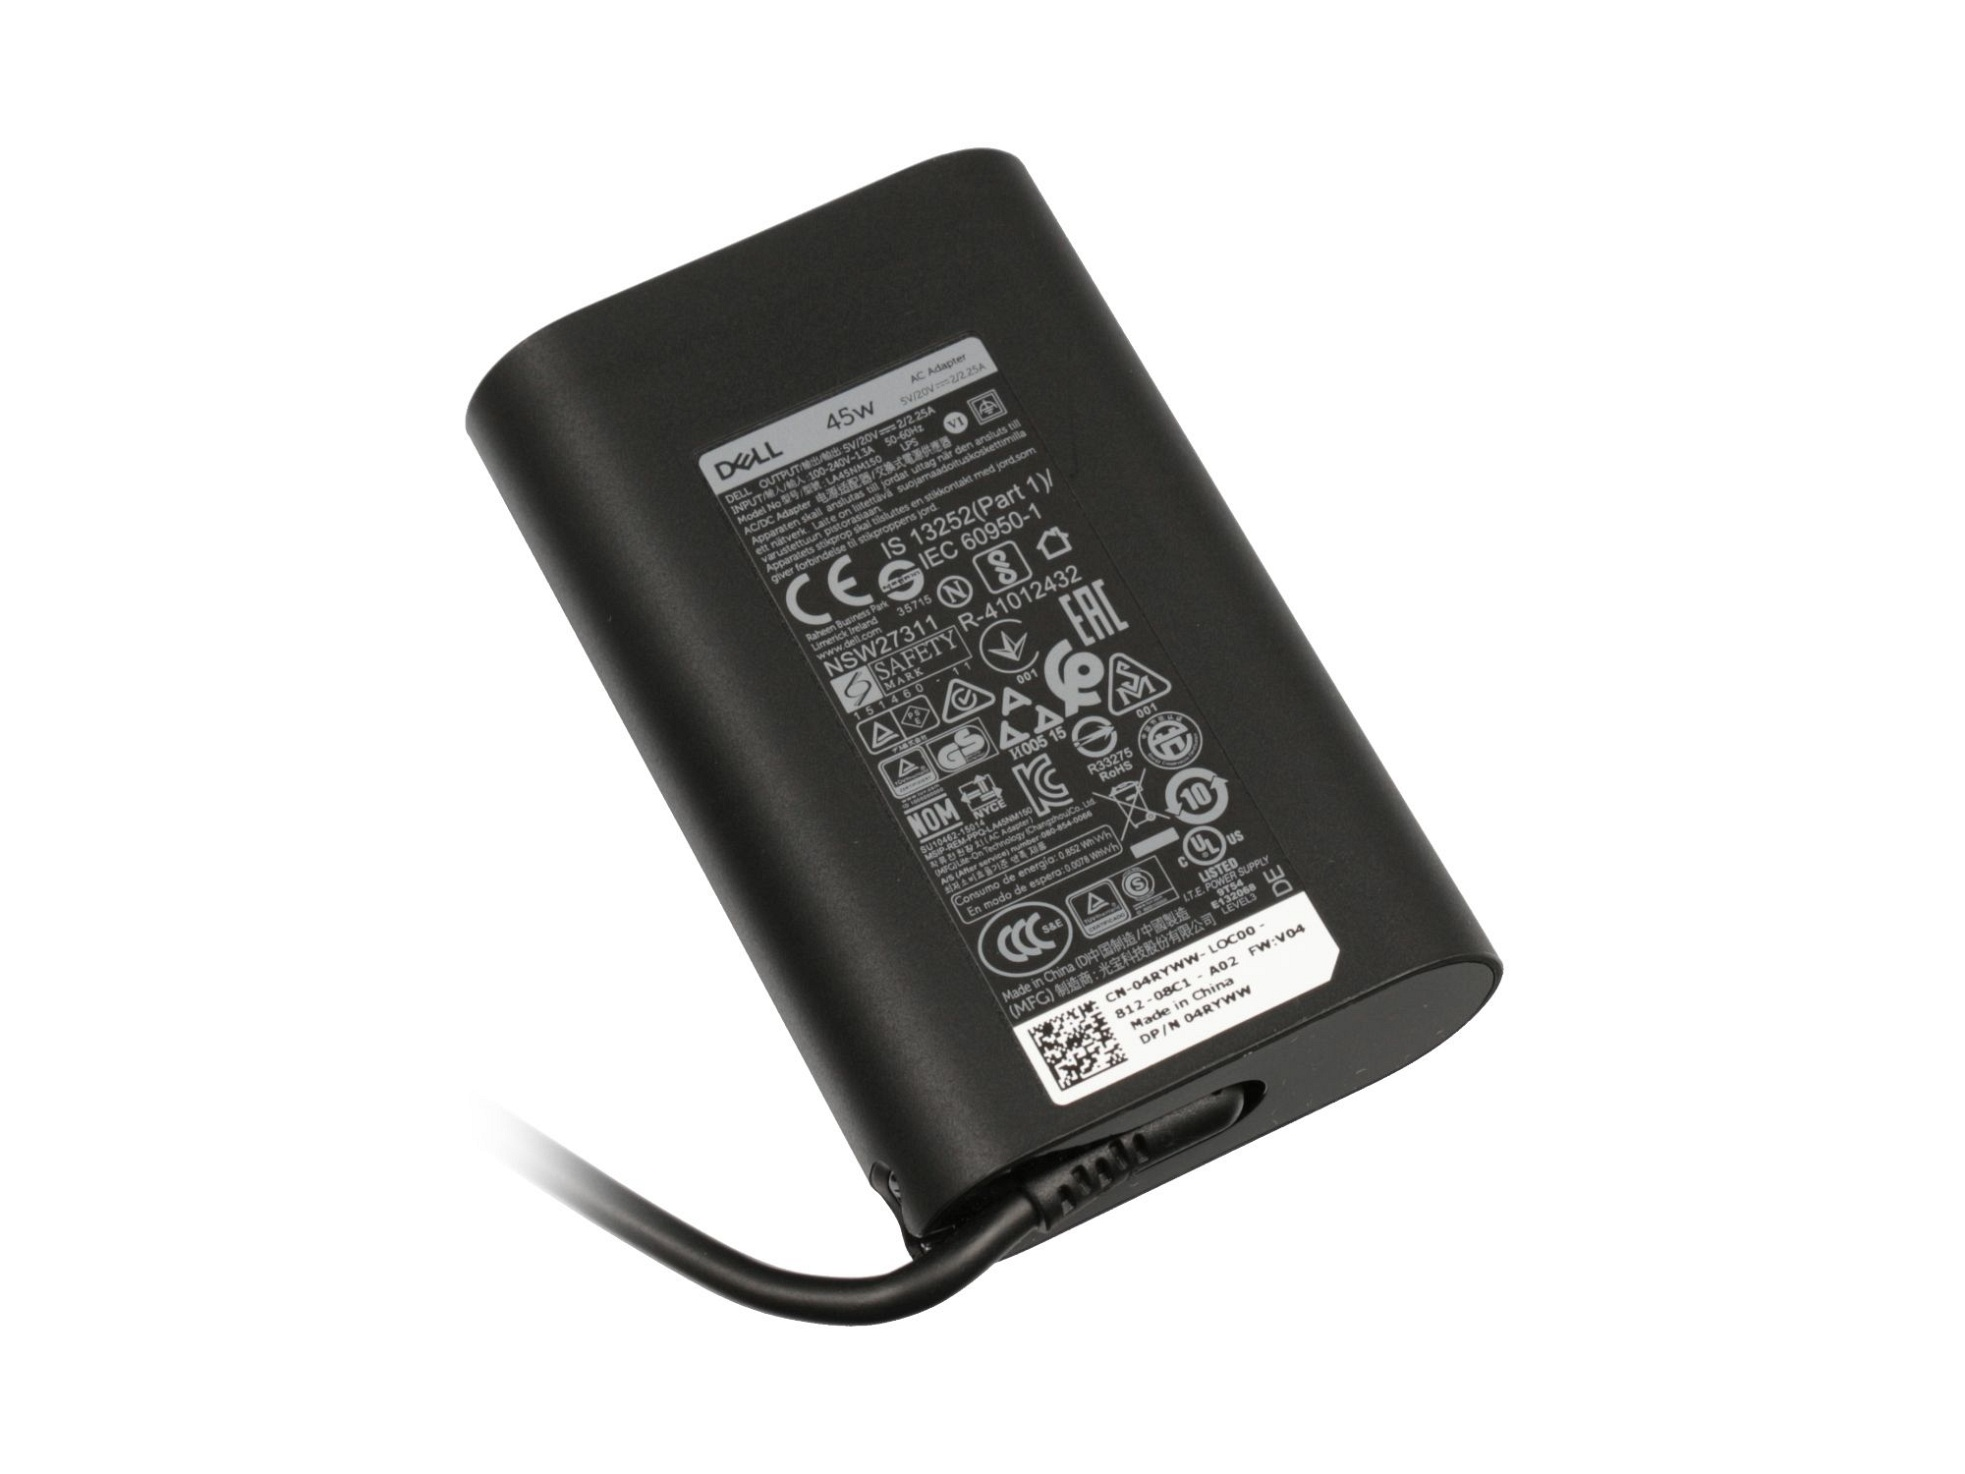 USB-C 470-ADFI 45 Netzteil Watt DELL Original